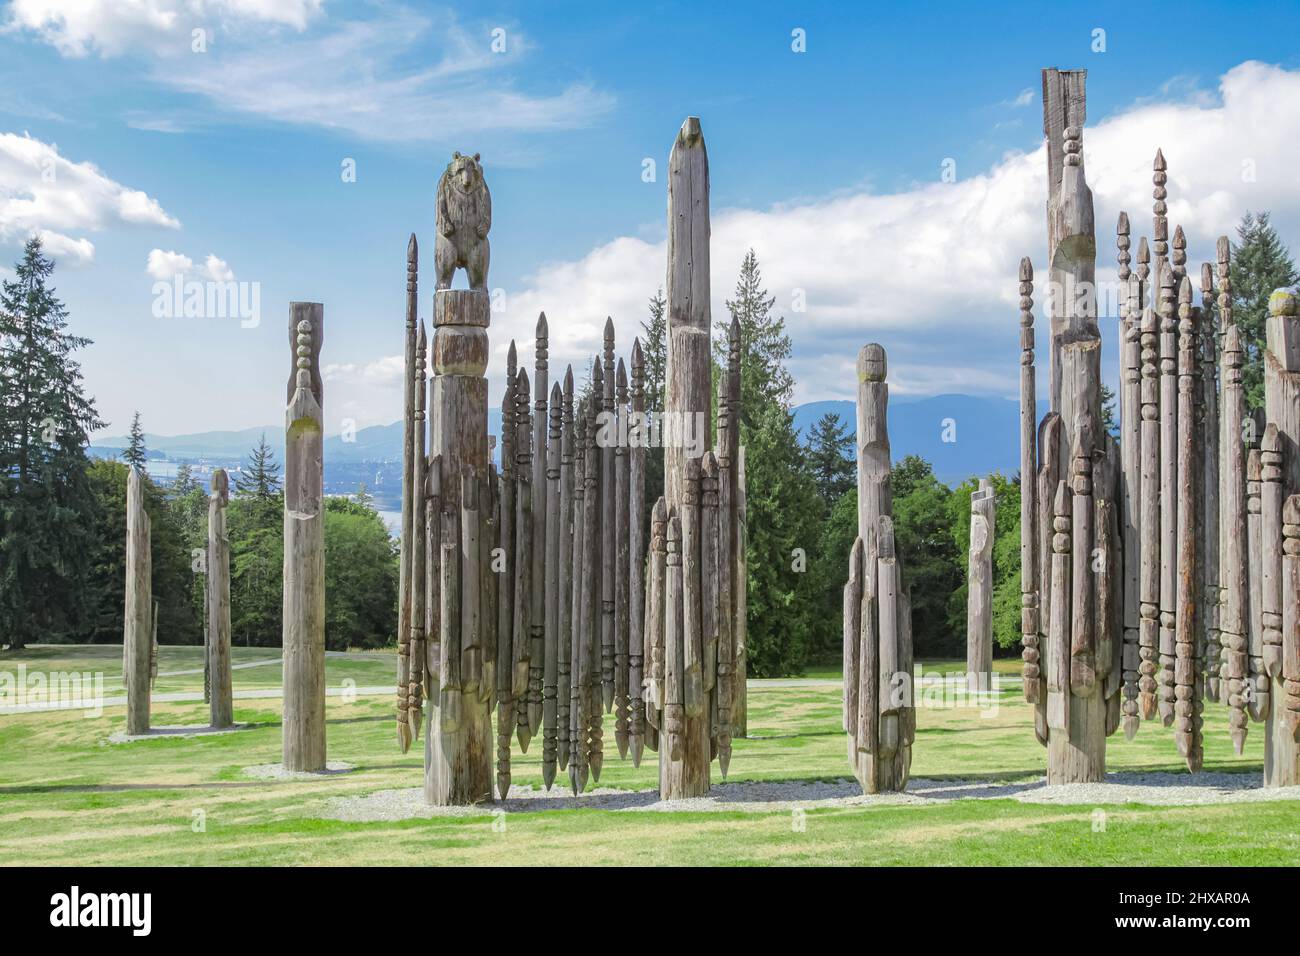 Die Totems von Vancouver, die Aussicht vom Burnaby Mountain Park. Japanische Ainu-Totempfähle. Reisefoto, selektiver Fokus, niemand Stockfoto